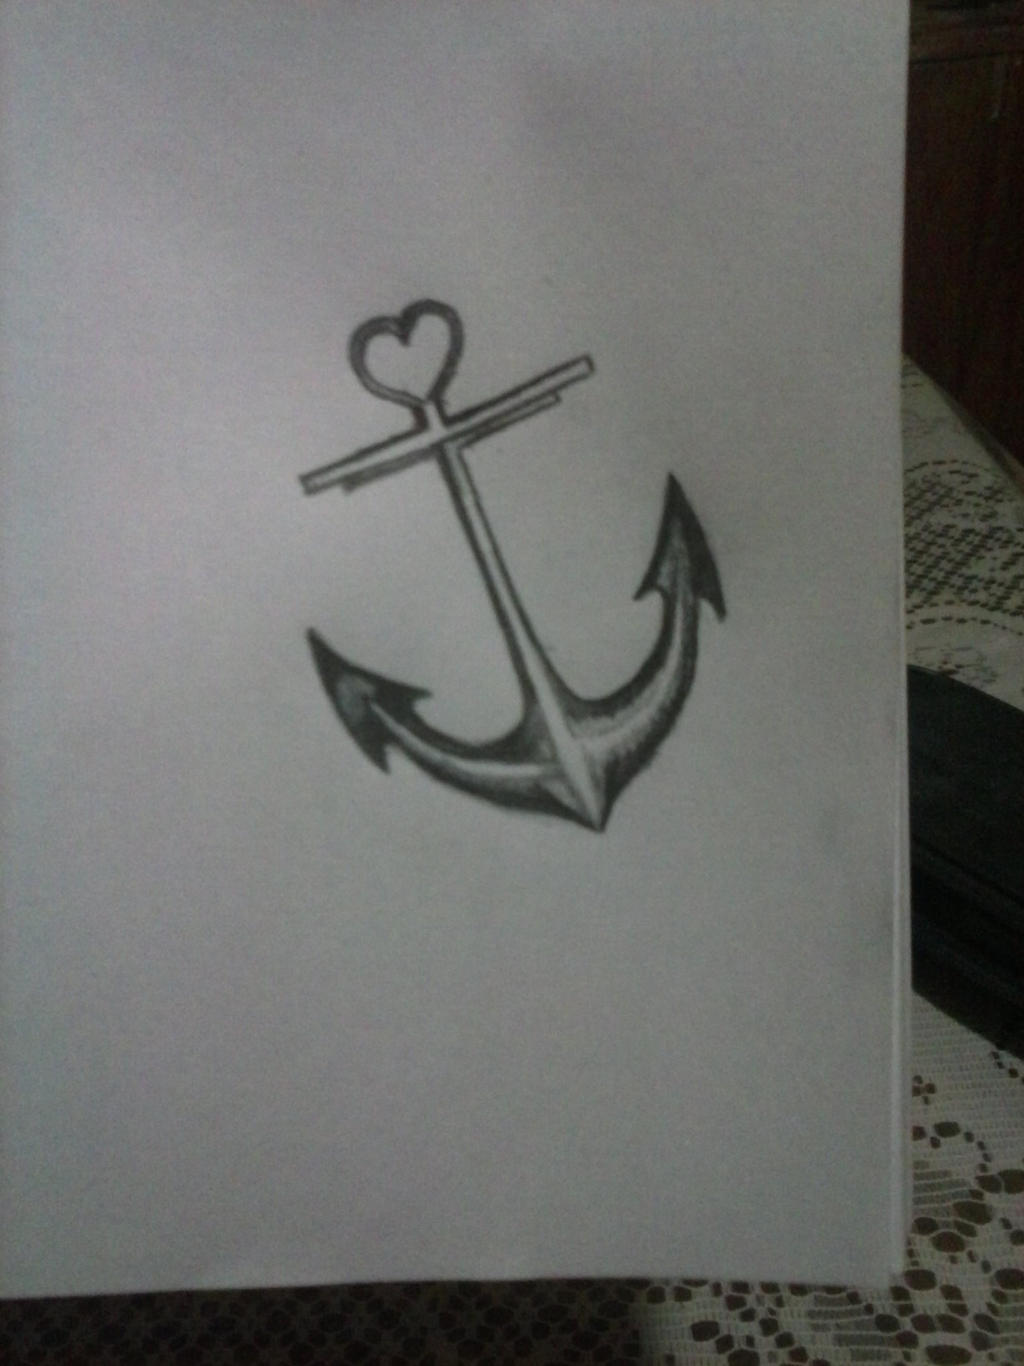 Lovely anchor